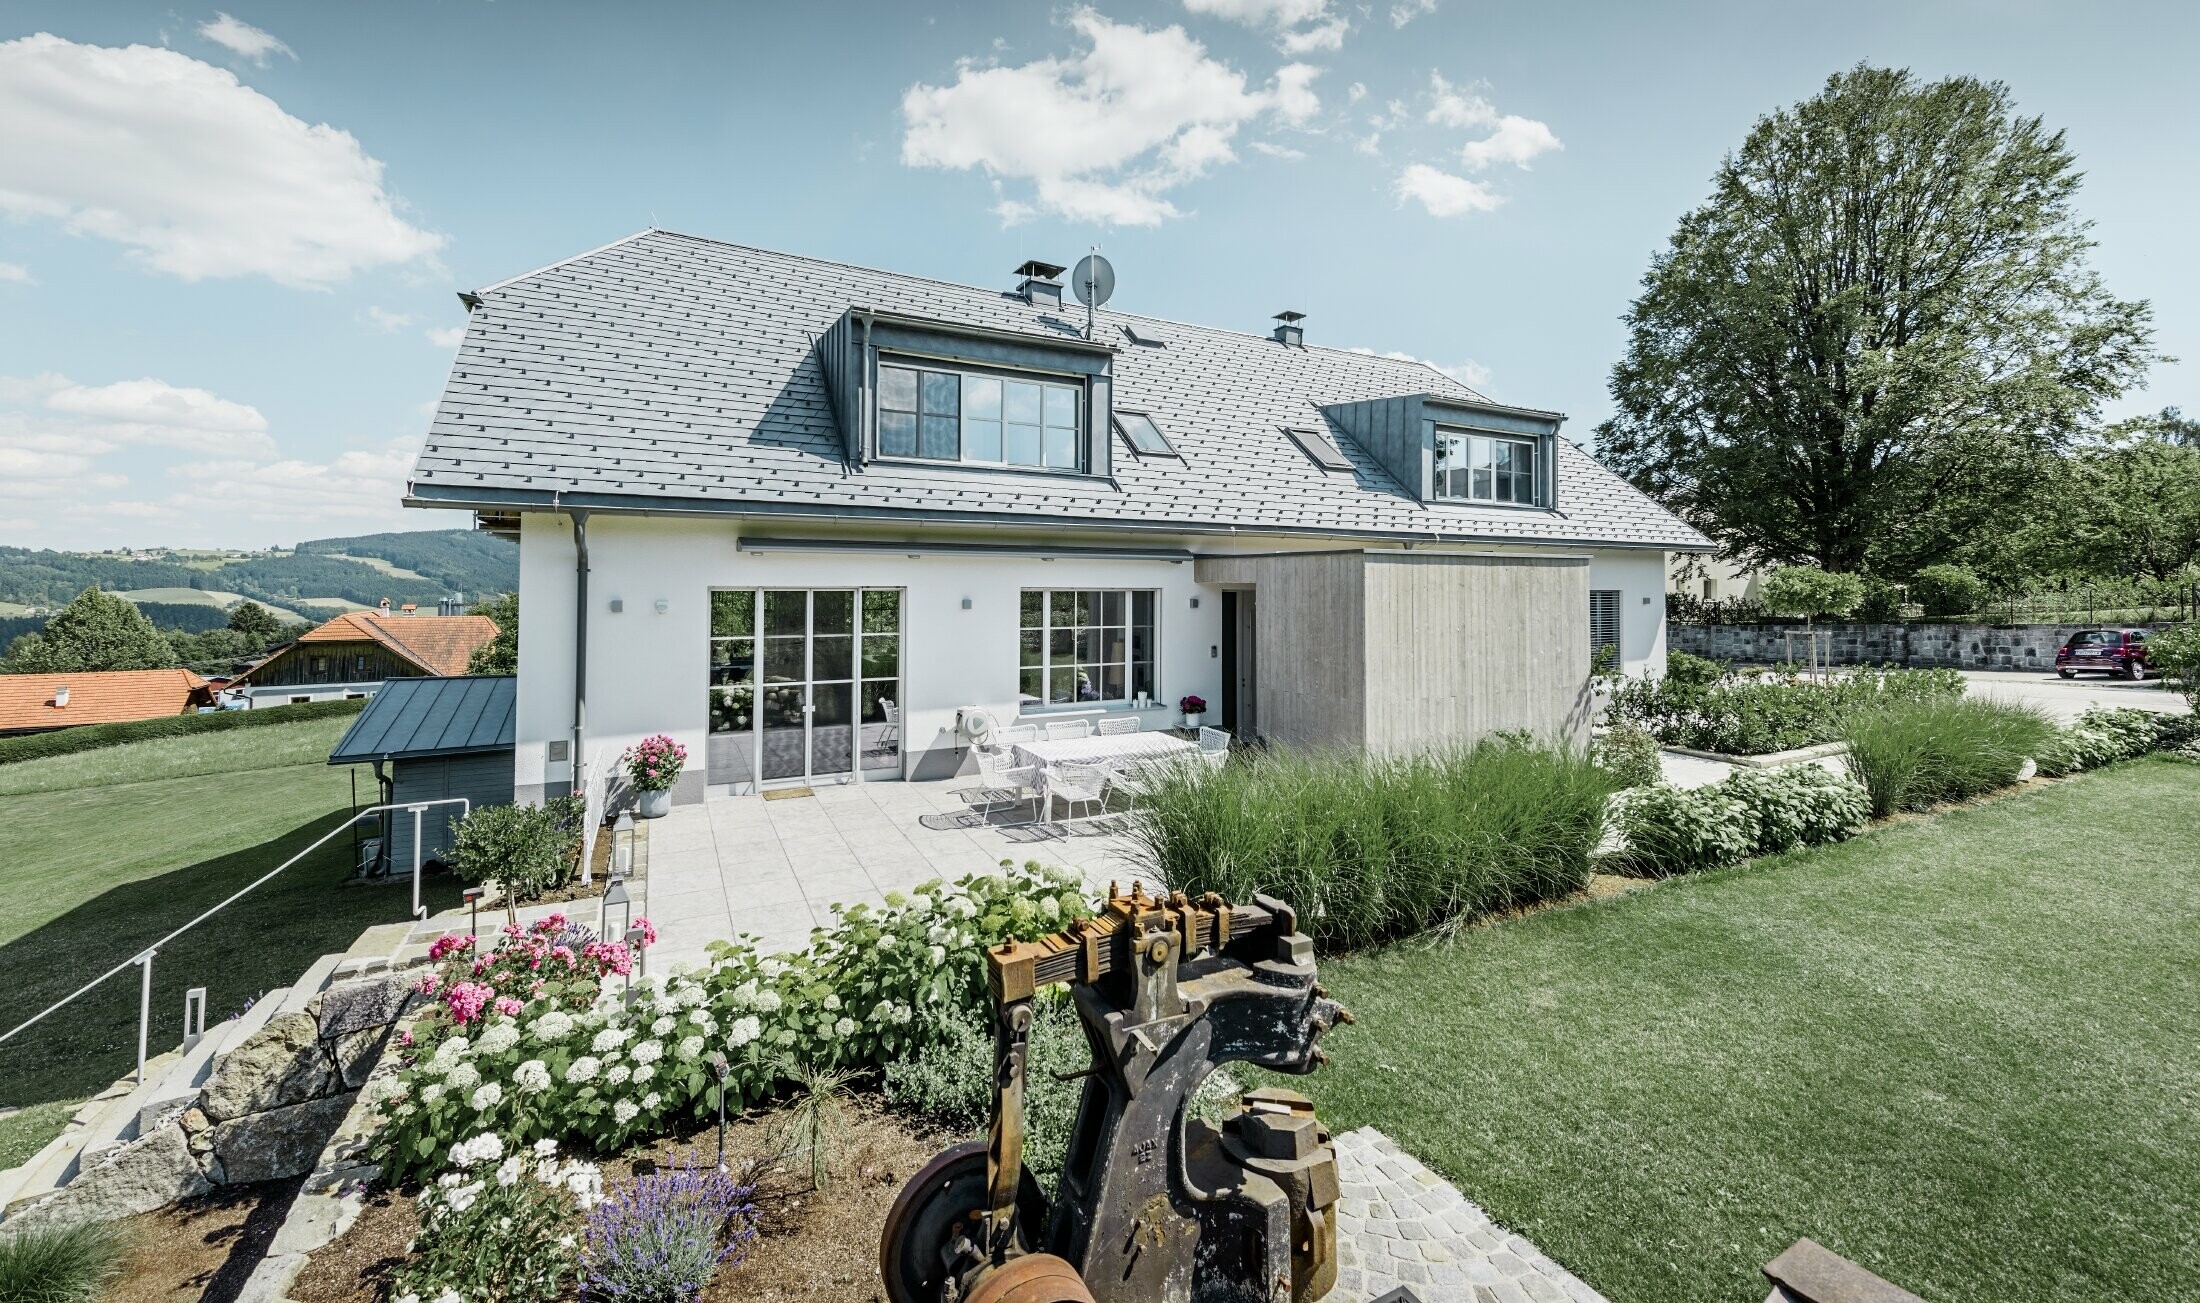 Klasický rodinný domek s polovalbovou střechou; dům s rekonstruovanou střechou s PREFA falcovaným šindelem v břidlicové barvě, s esteticky upravenou zahradou a velkou terasou.